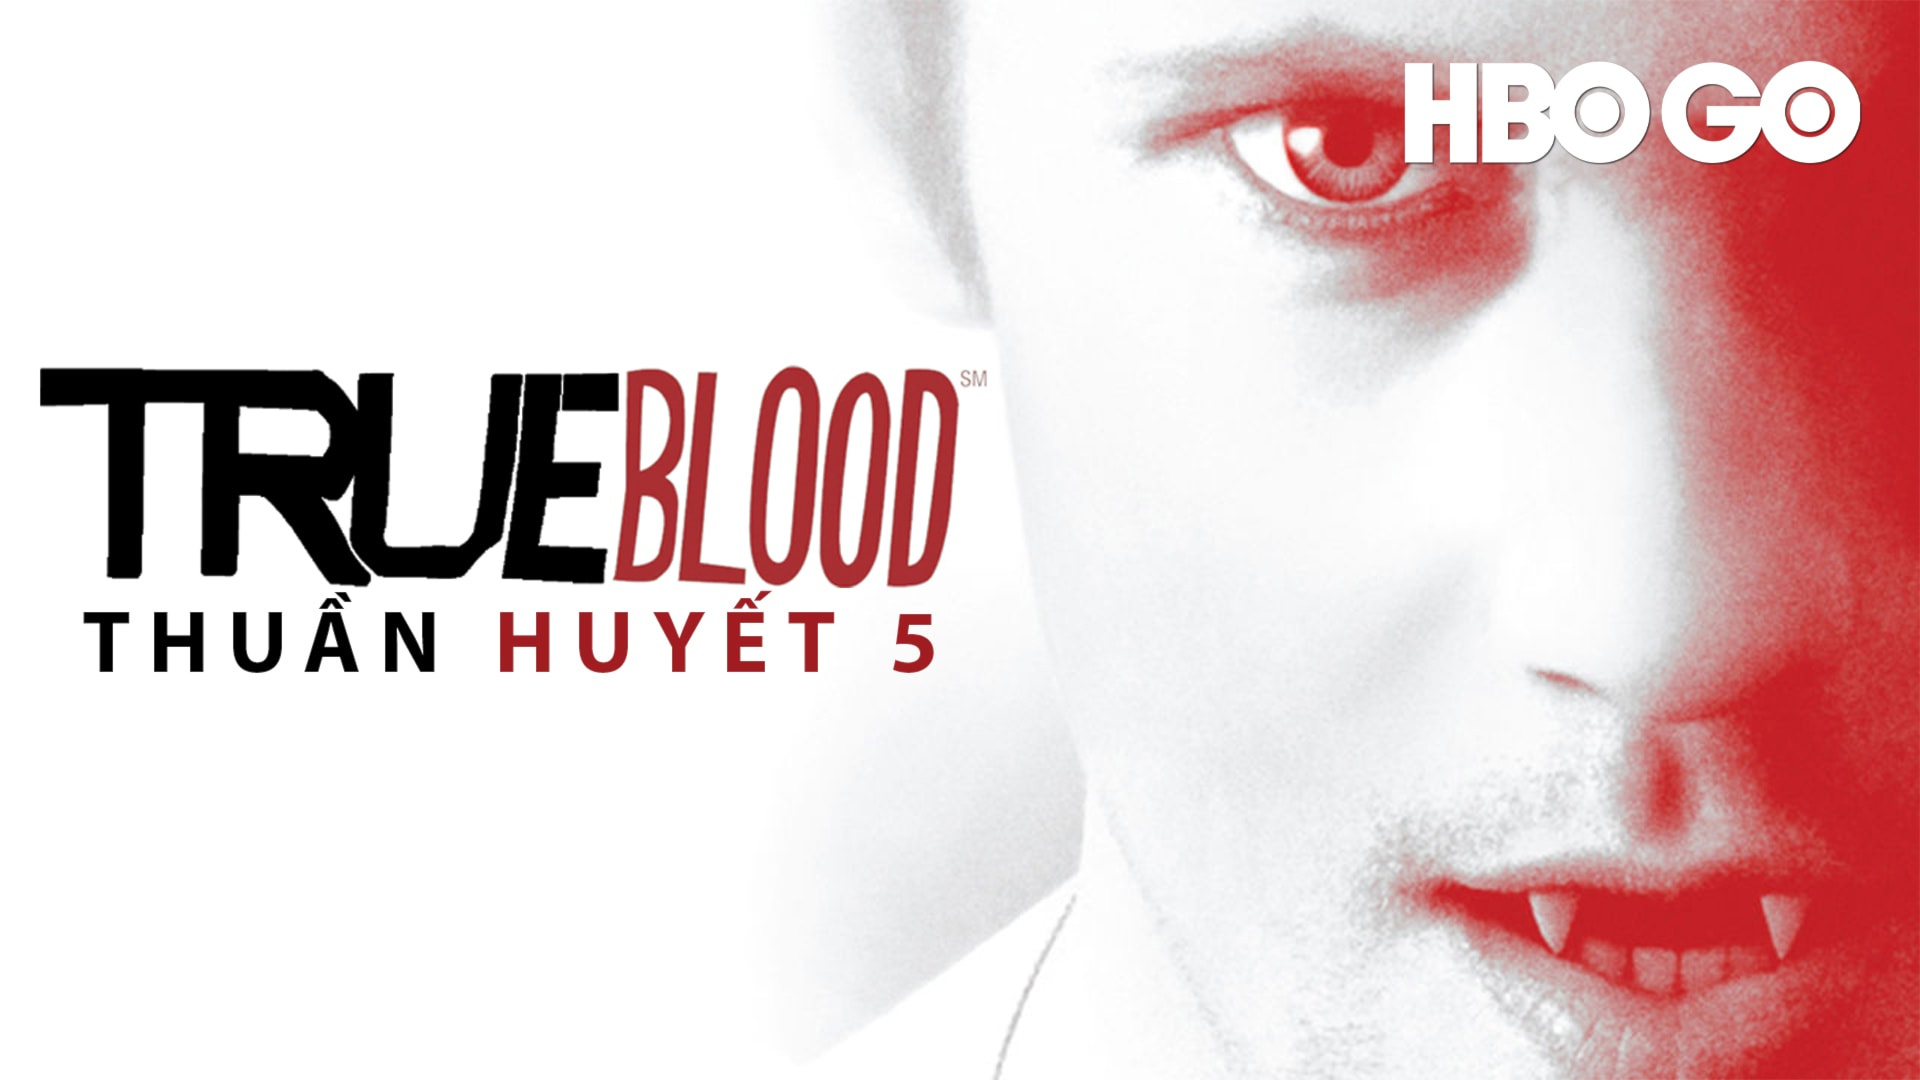 True Blood (Season 5) (2012)